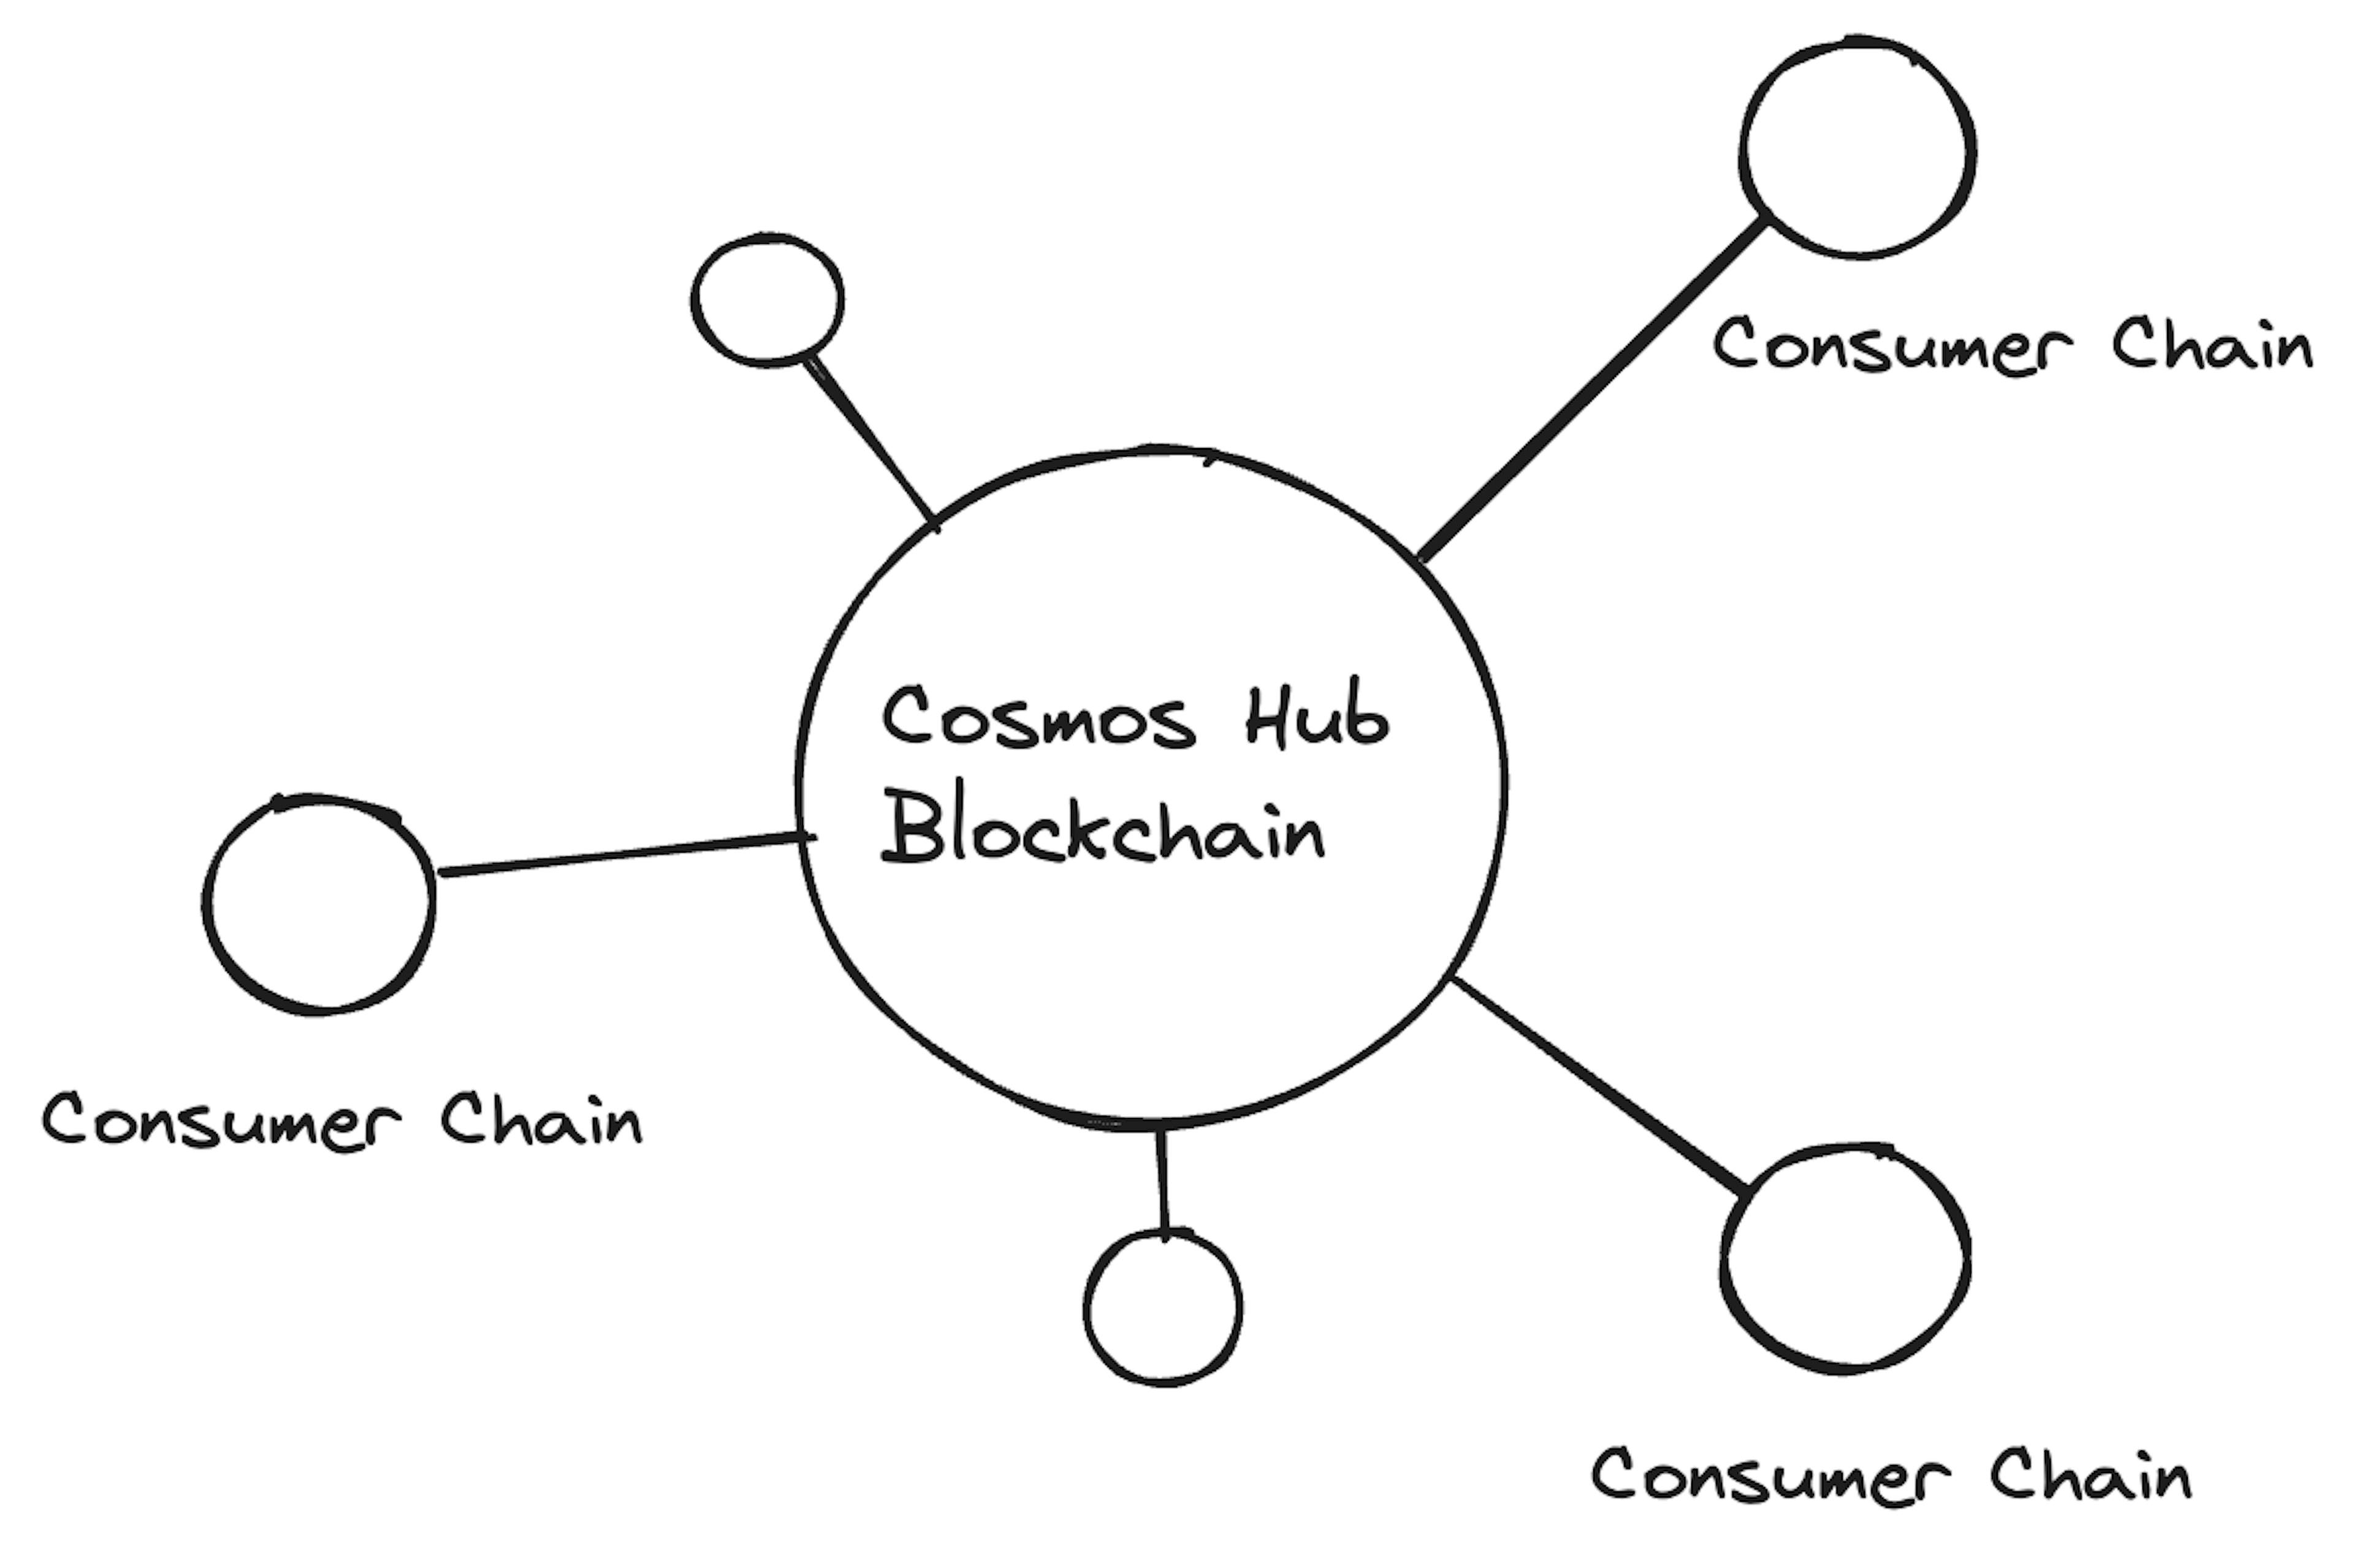 Fig. 1. Cosmos Interchain Security. Source: Cosmos Developer Portal